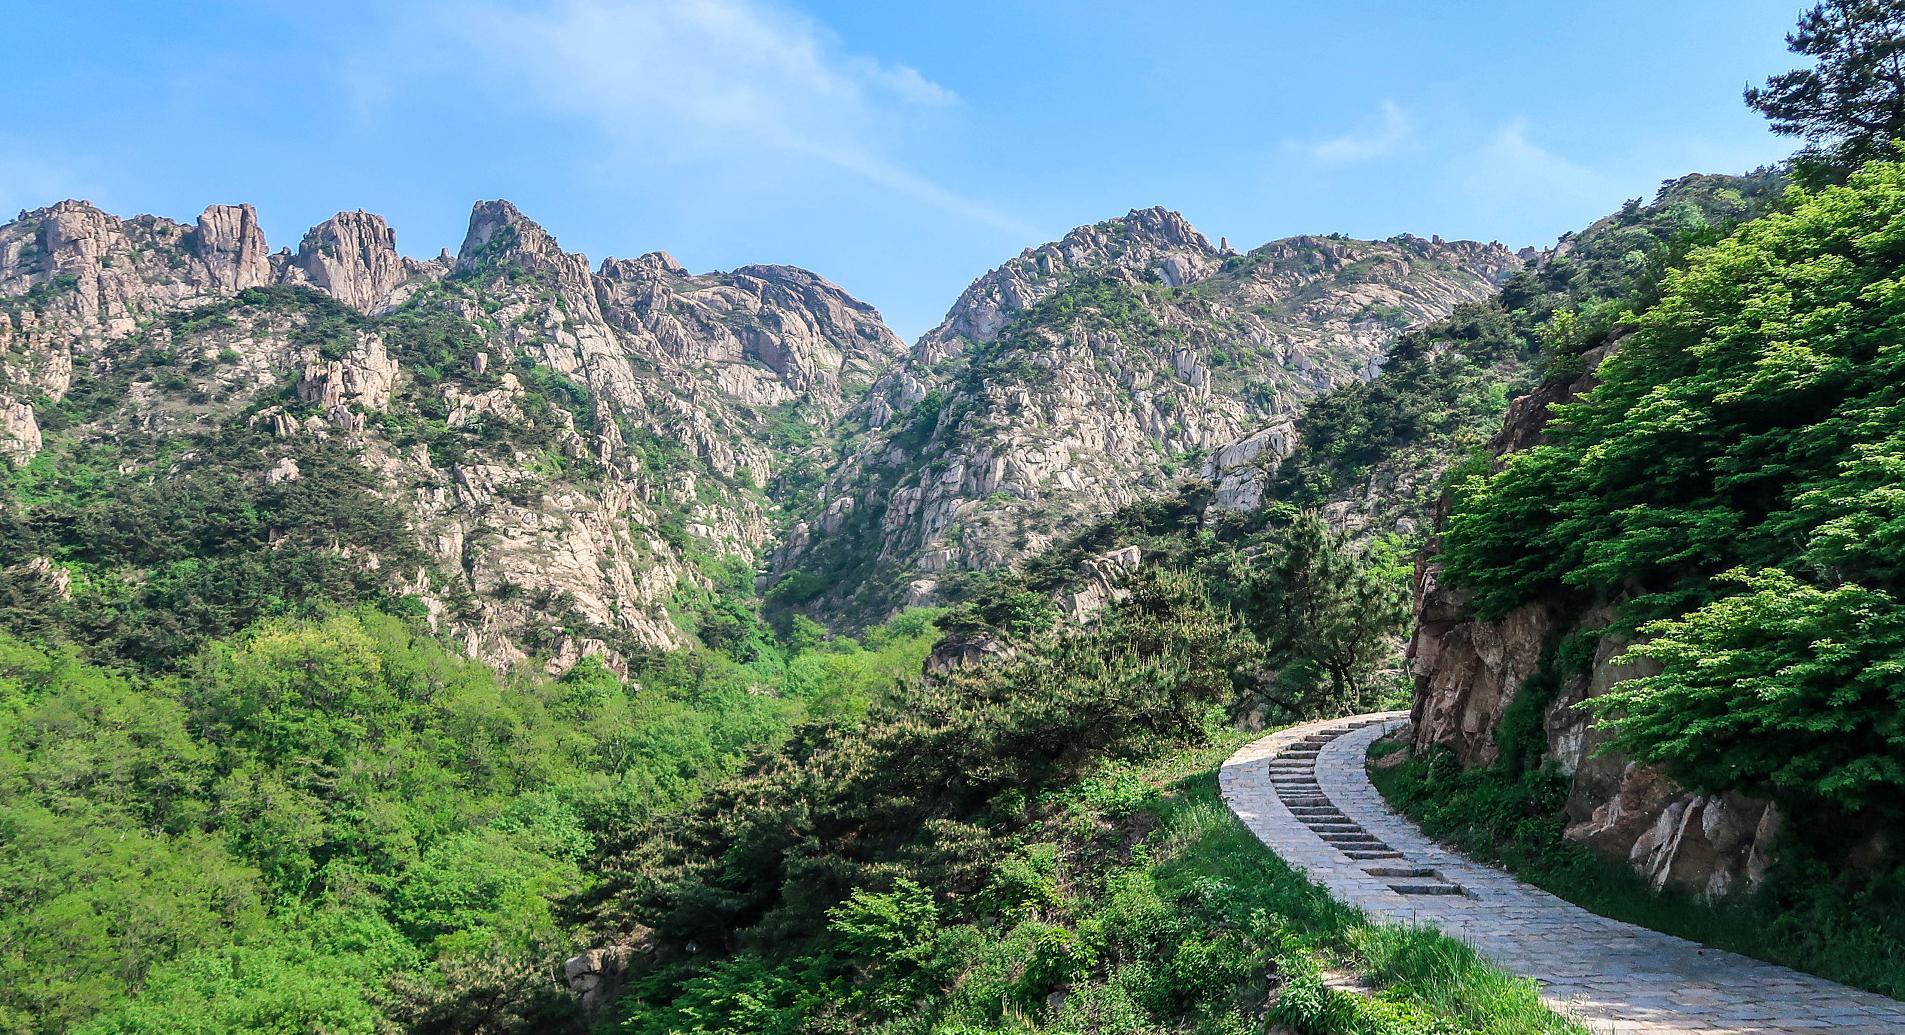 八仙山,位于天津市蓟县境内,是一座以森林景观为主的山岳型自然风景区